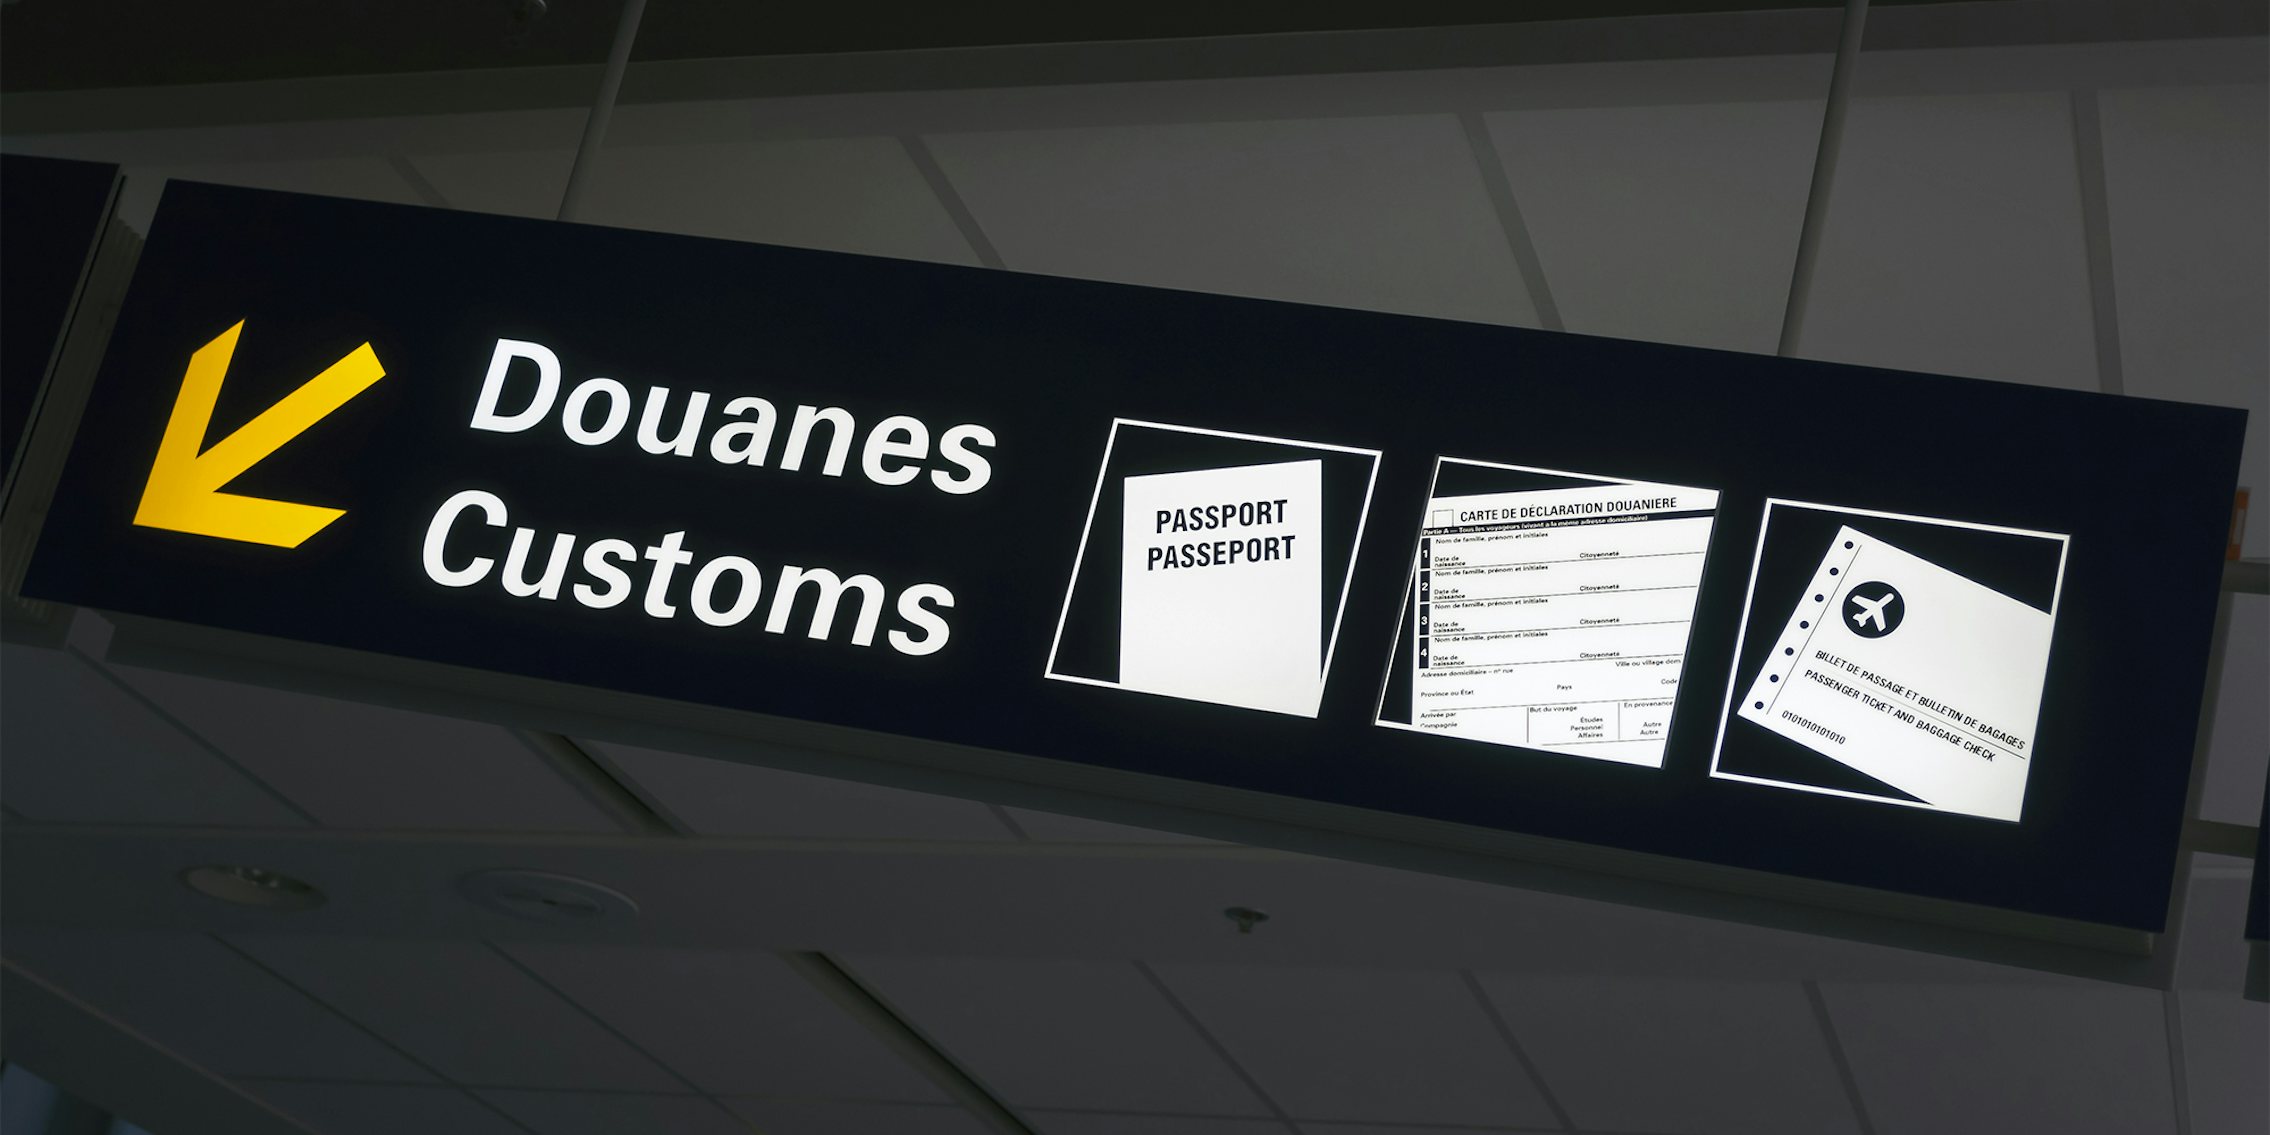 Duones/Customs sign